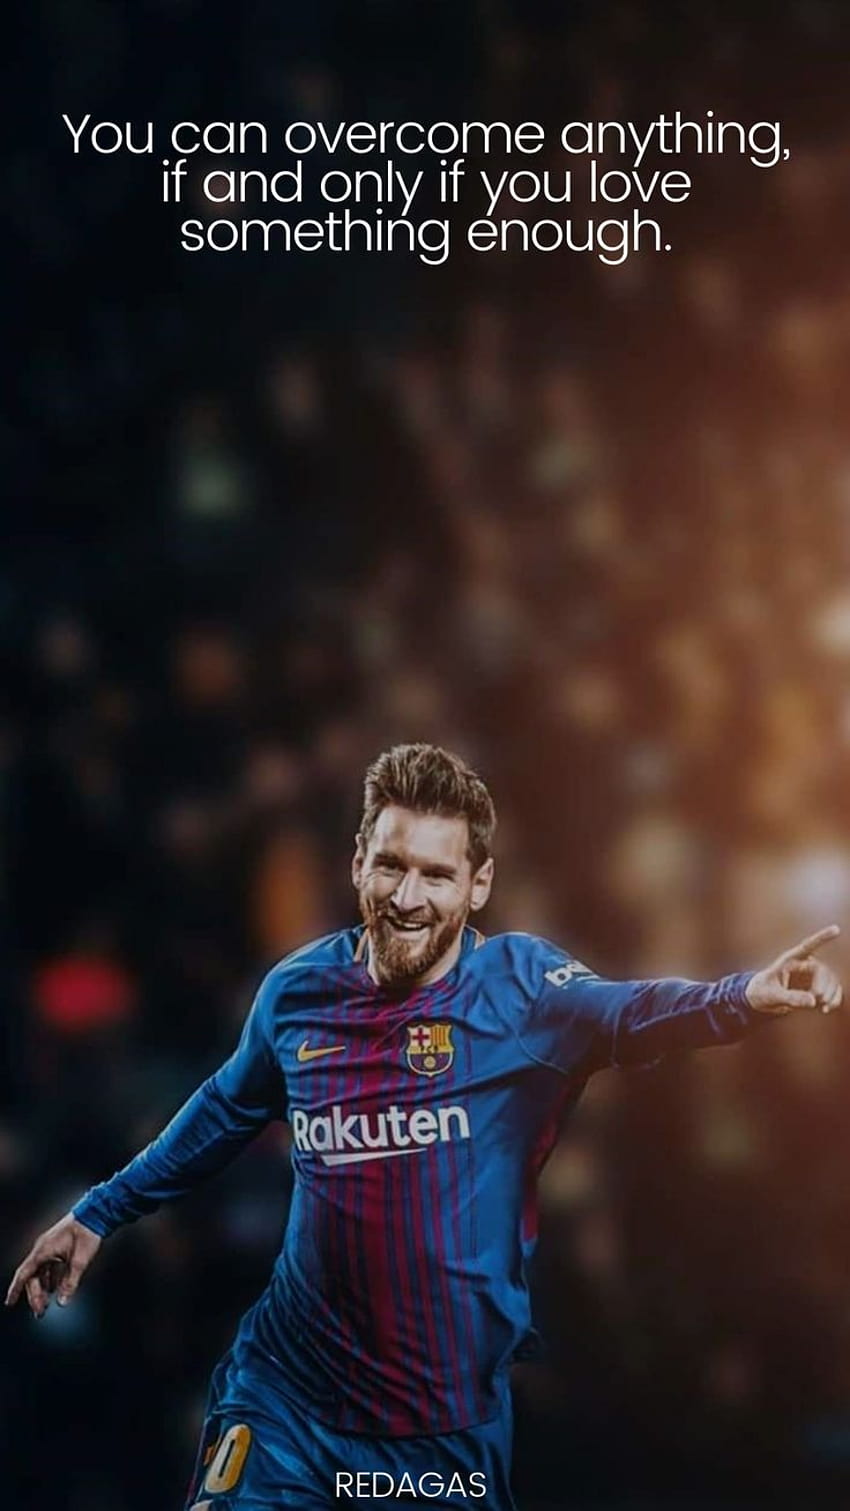 Nghe nói Messi từng phát biểu rất cảm động về đam mê và tình yêu bóng đá của mình, bạn có muốn nghe những lời của huyền thoại này không? Hãy xem hình về Messi quotes để cảm nhận sự nhiệt huyết của cầu thủ này nhé.